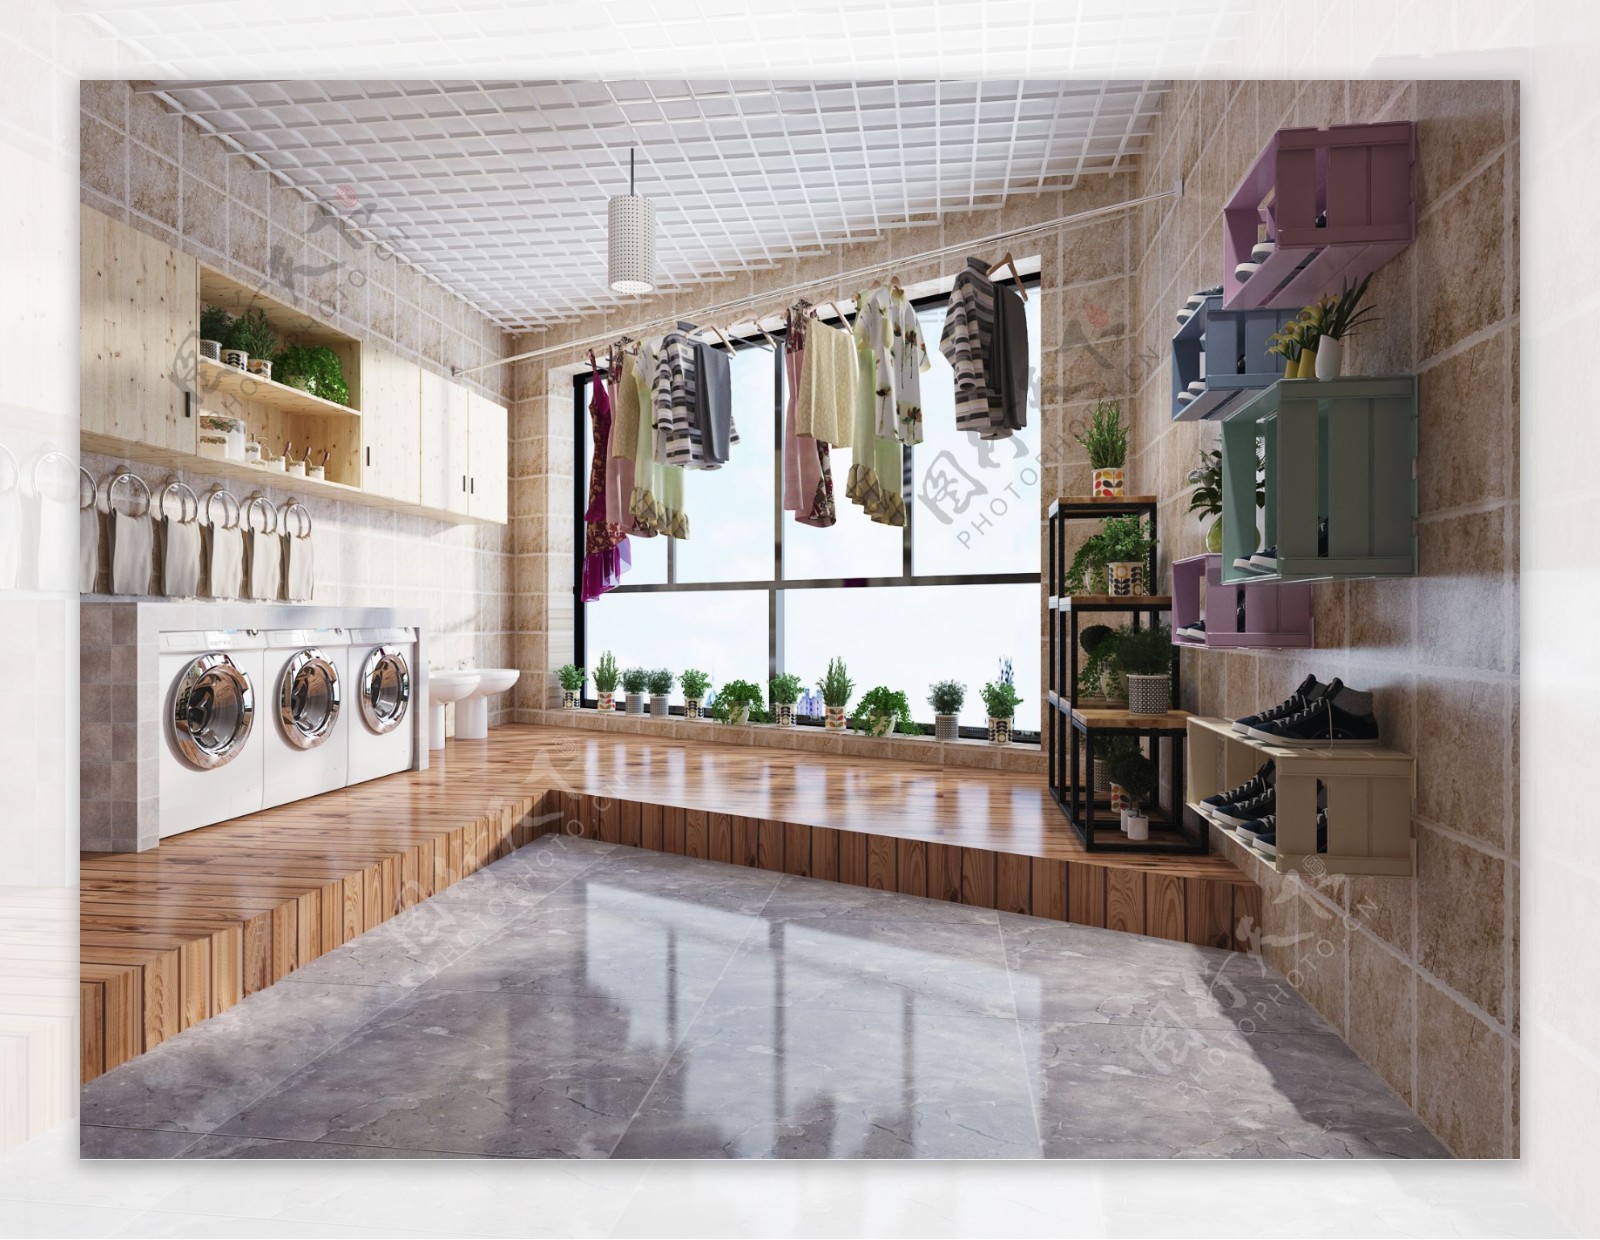 现代别墅洗衣房装修效果图